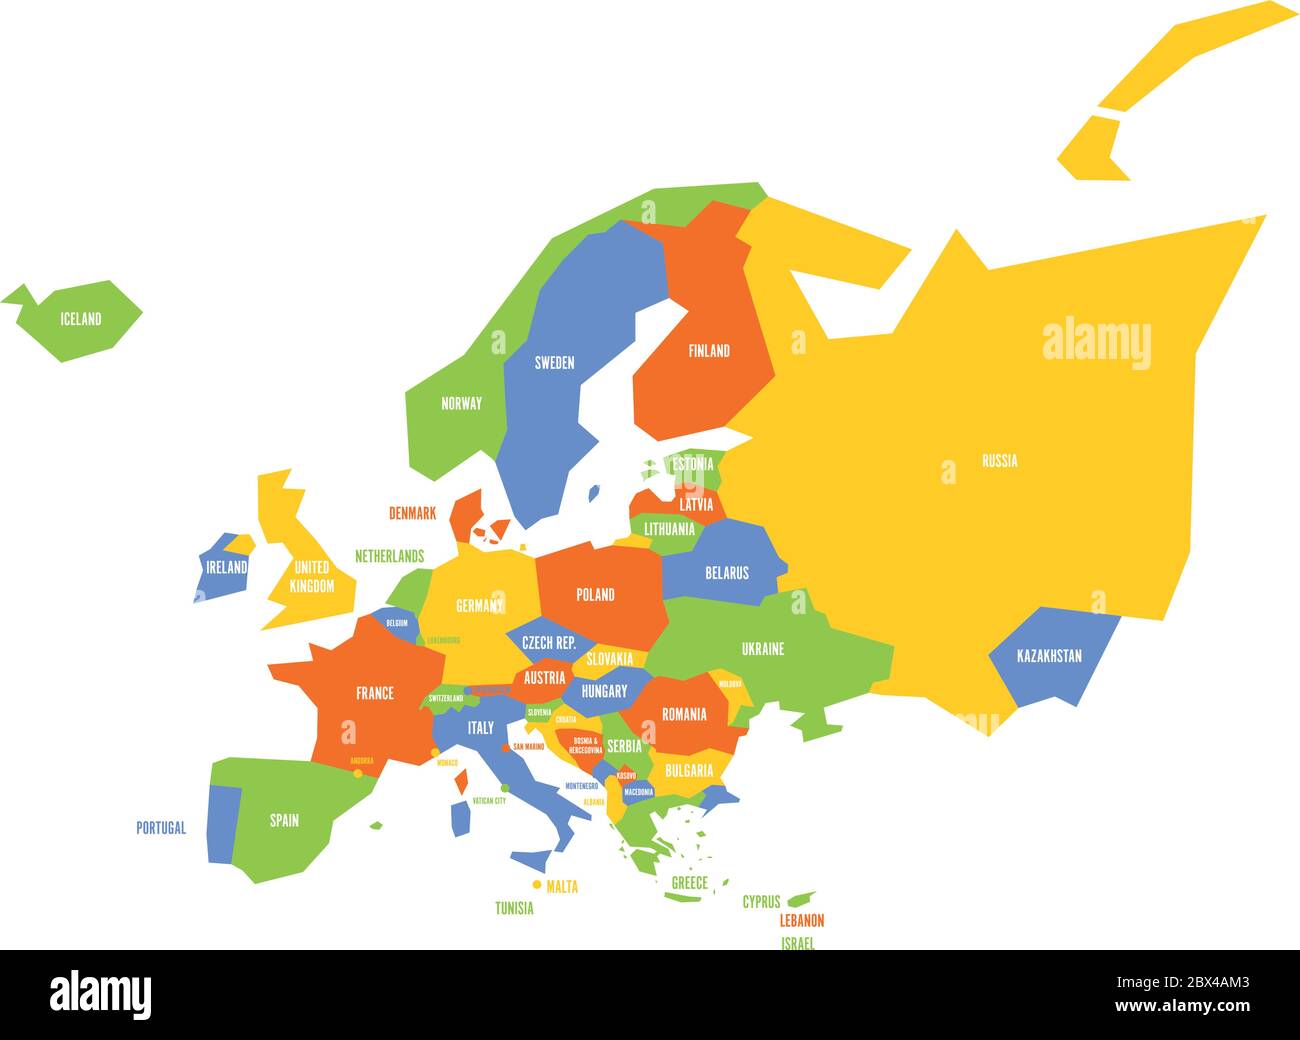 Mappa politica infografica dell'Europa molto semplificata. Semplice illustrazione geometrica vettoriale. Illustrazione Vettoriale